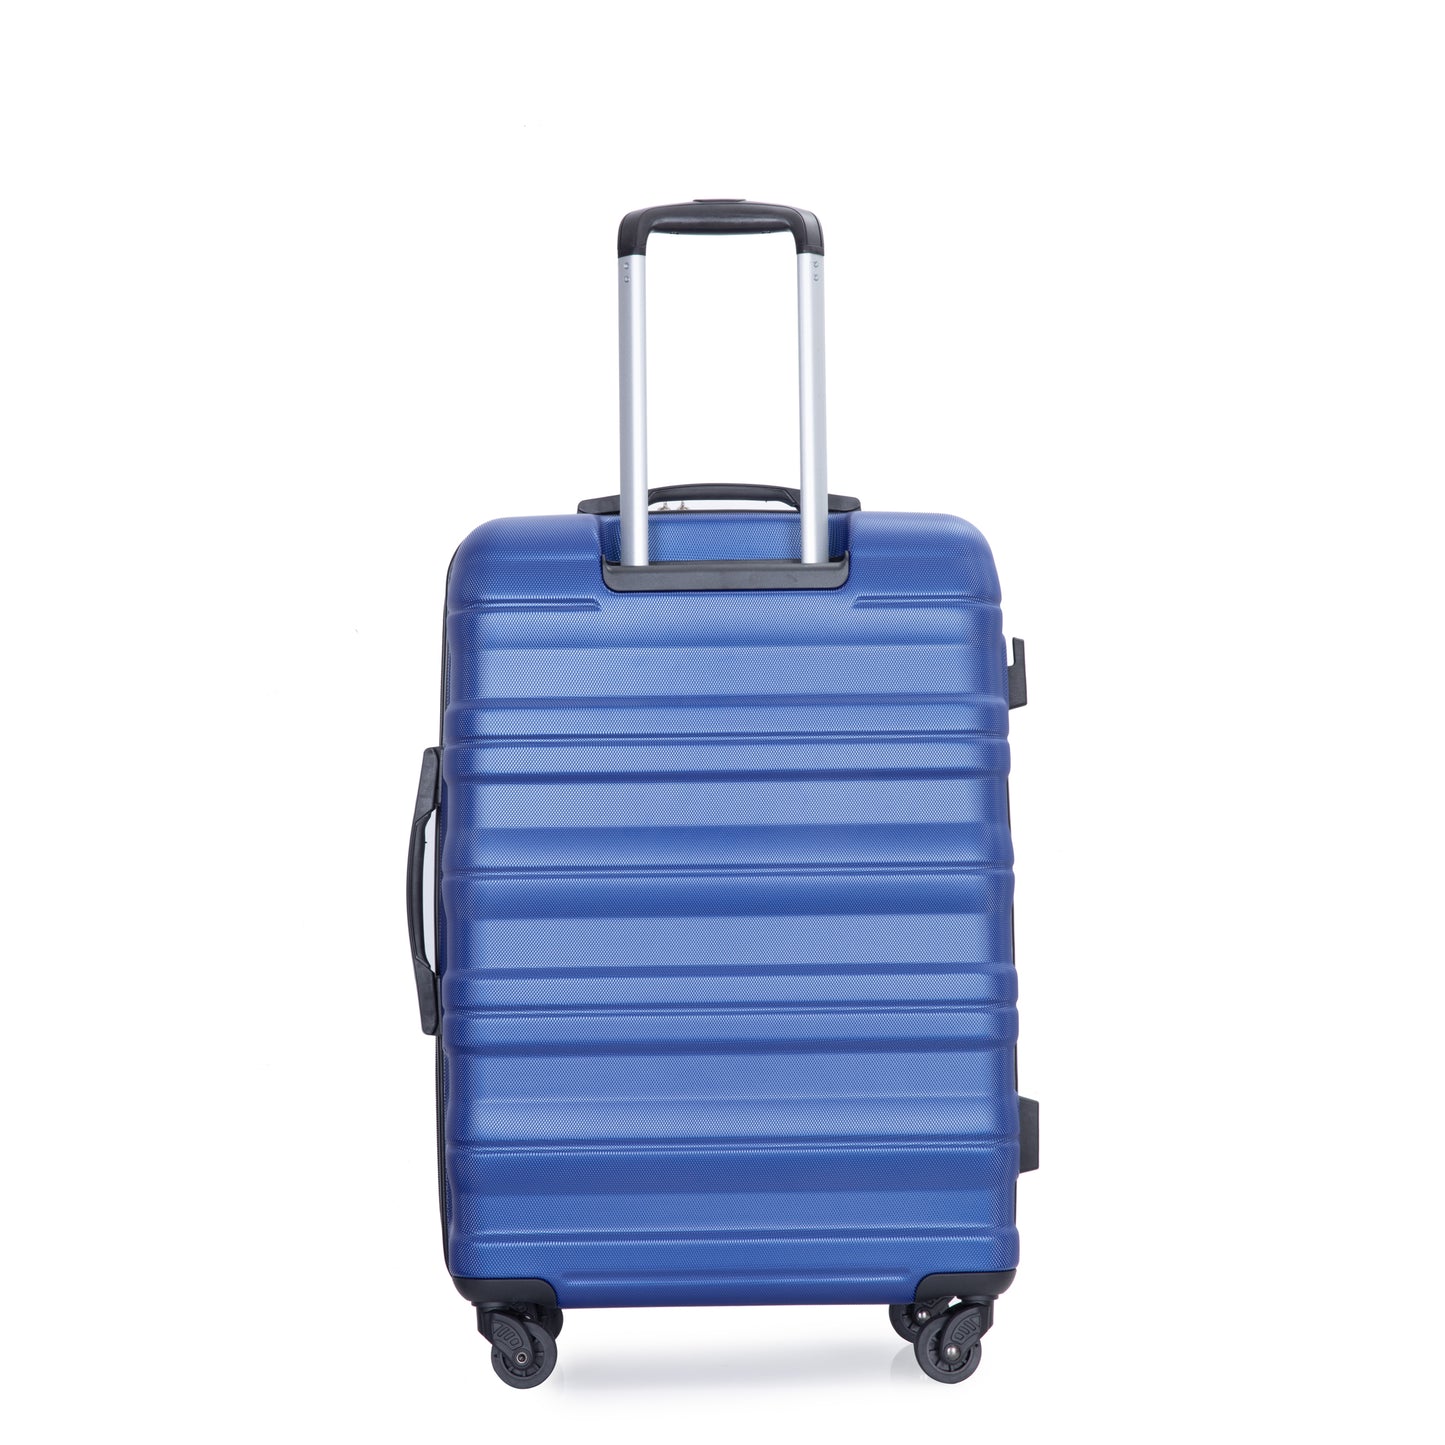 Ensembles de bagages 3 pièces Valise extensible légère et durable avec deux crochets, roulettes pivotantes, serrure TSA (21/25/29) Bleu foncé